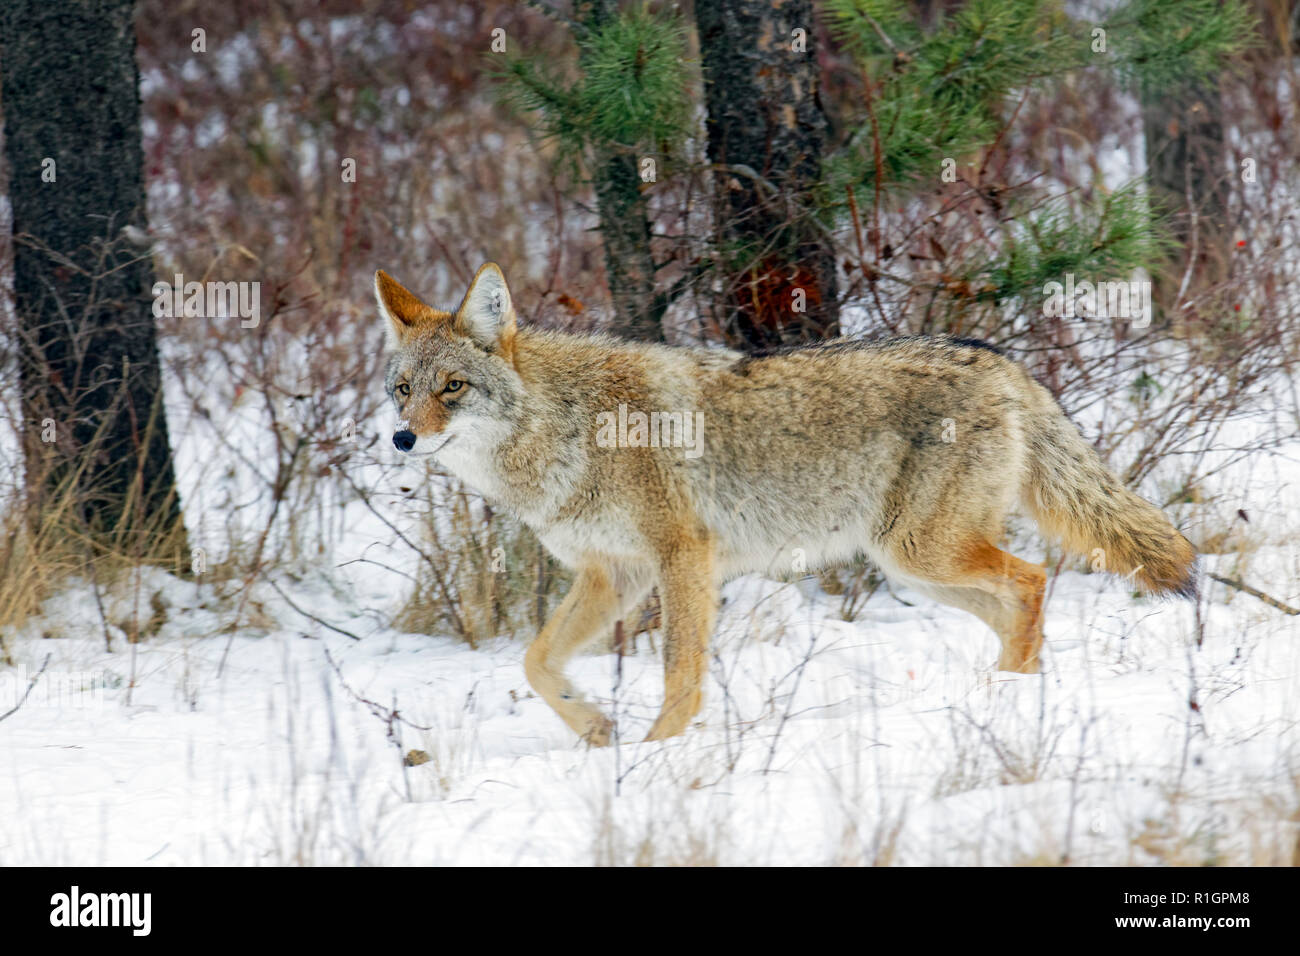 42 751,09127 close up d'une alerte coyote adultes marche sur un sentier dans la forêt enneigée de la neige sous les arbres dans la forêt de la brosse Banque D'Images